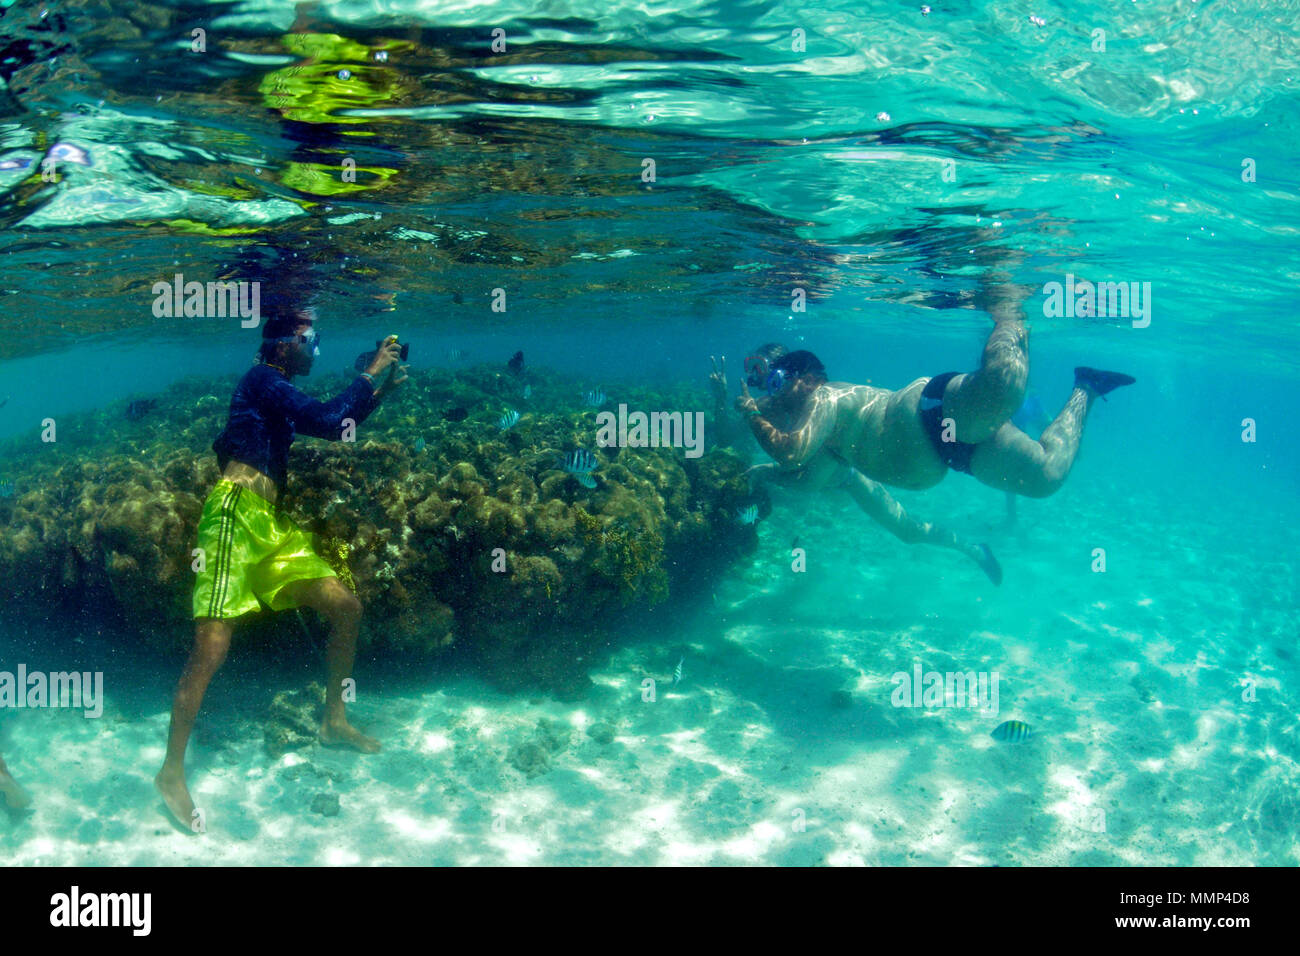 Ein schnorchler nimmt ein Bild von zwei Touristen um einen toten Korallenriff in den natürlichen Pools oder "gales", Maragogi, Alagoas, Brasilien Stockfoto